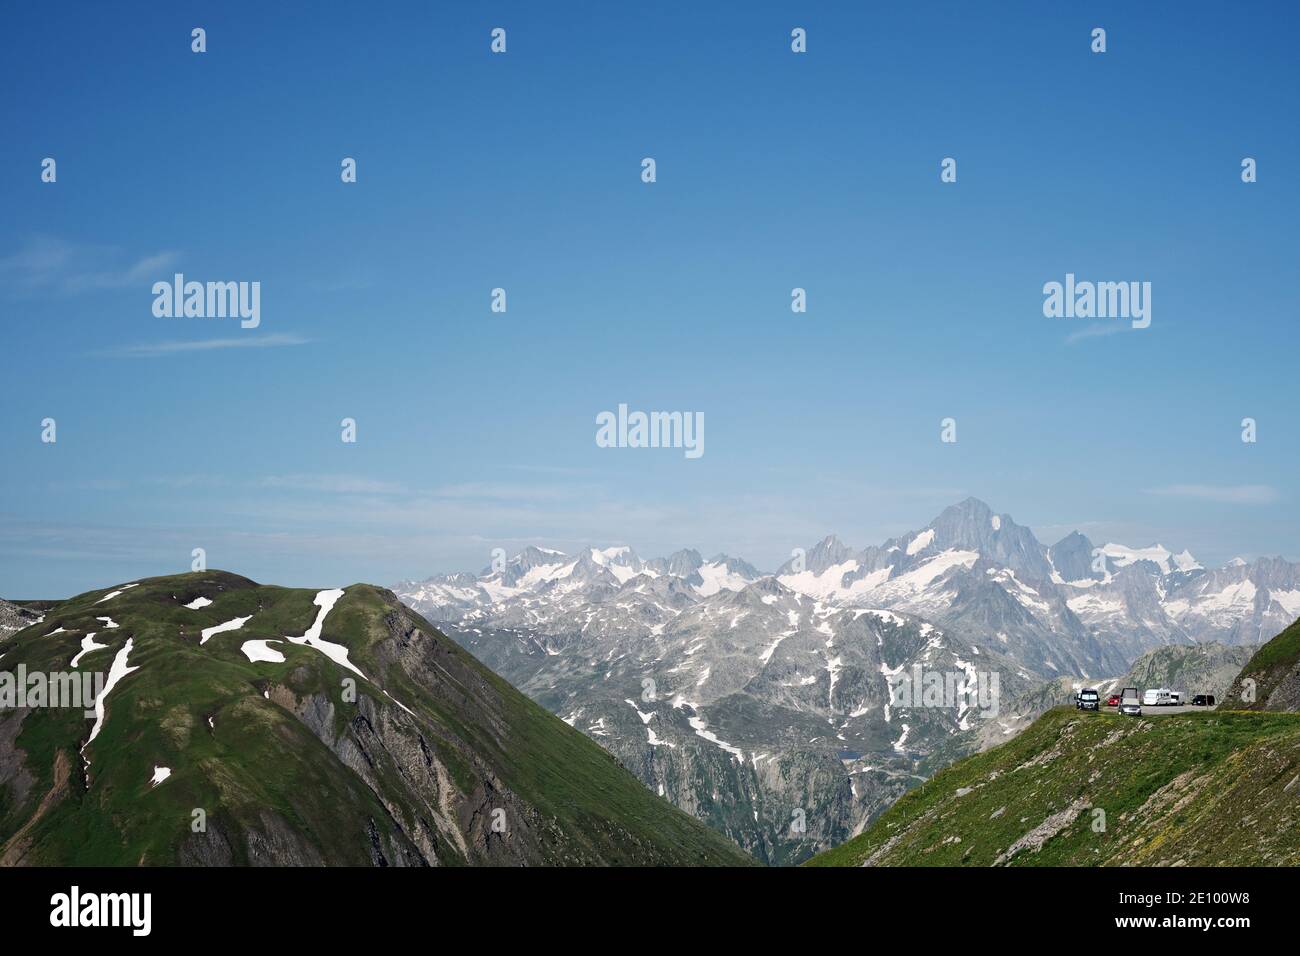 El paisaje montañoso de Furka Pass y las furgonetas de campistas distantes estacionadas en el paisaje de montaña de los Alpes suizos de Realp, Uri, Suiza UE Foto de stock